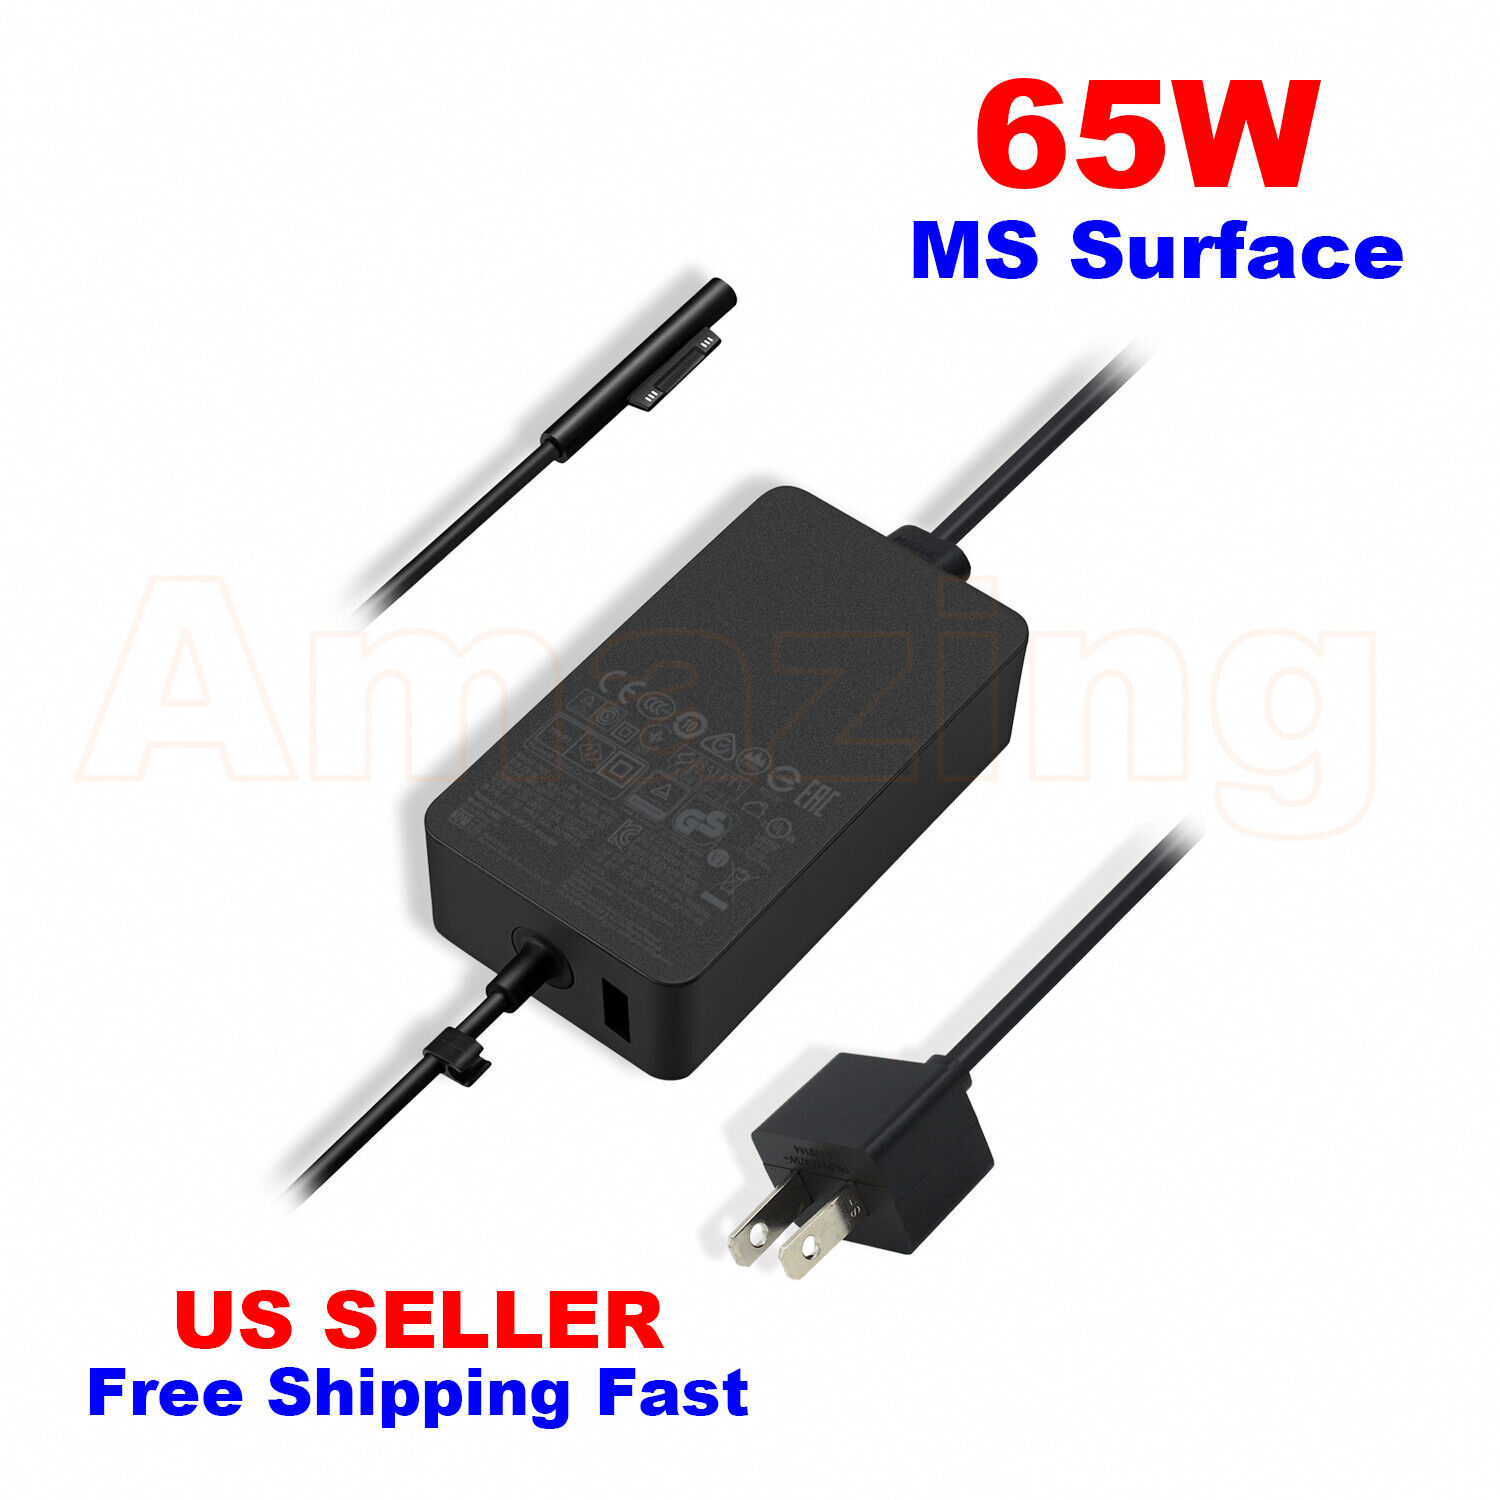 NEW Surface 127W 102W 65W 44W 36W 24W Pro Book Laptop Go Power Supply Cord OEM